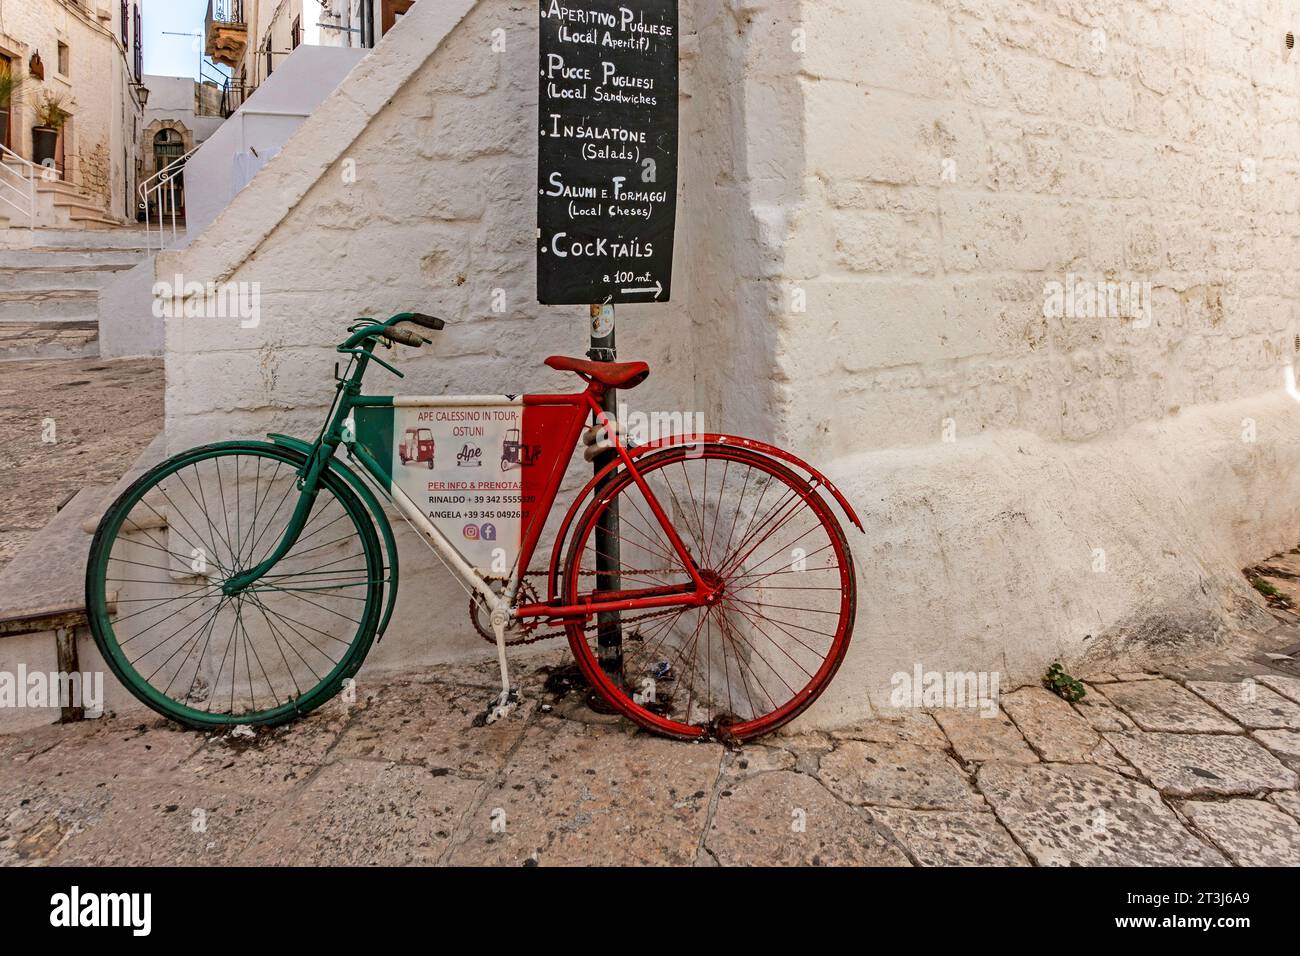 Eine farbenfrohe Szene in Ostuni, Italien, ein Fahrrad mit einer Werbung für Tuctuc Motortouren unter einem Schild für ein lokales Café. Stockfoto